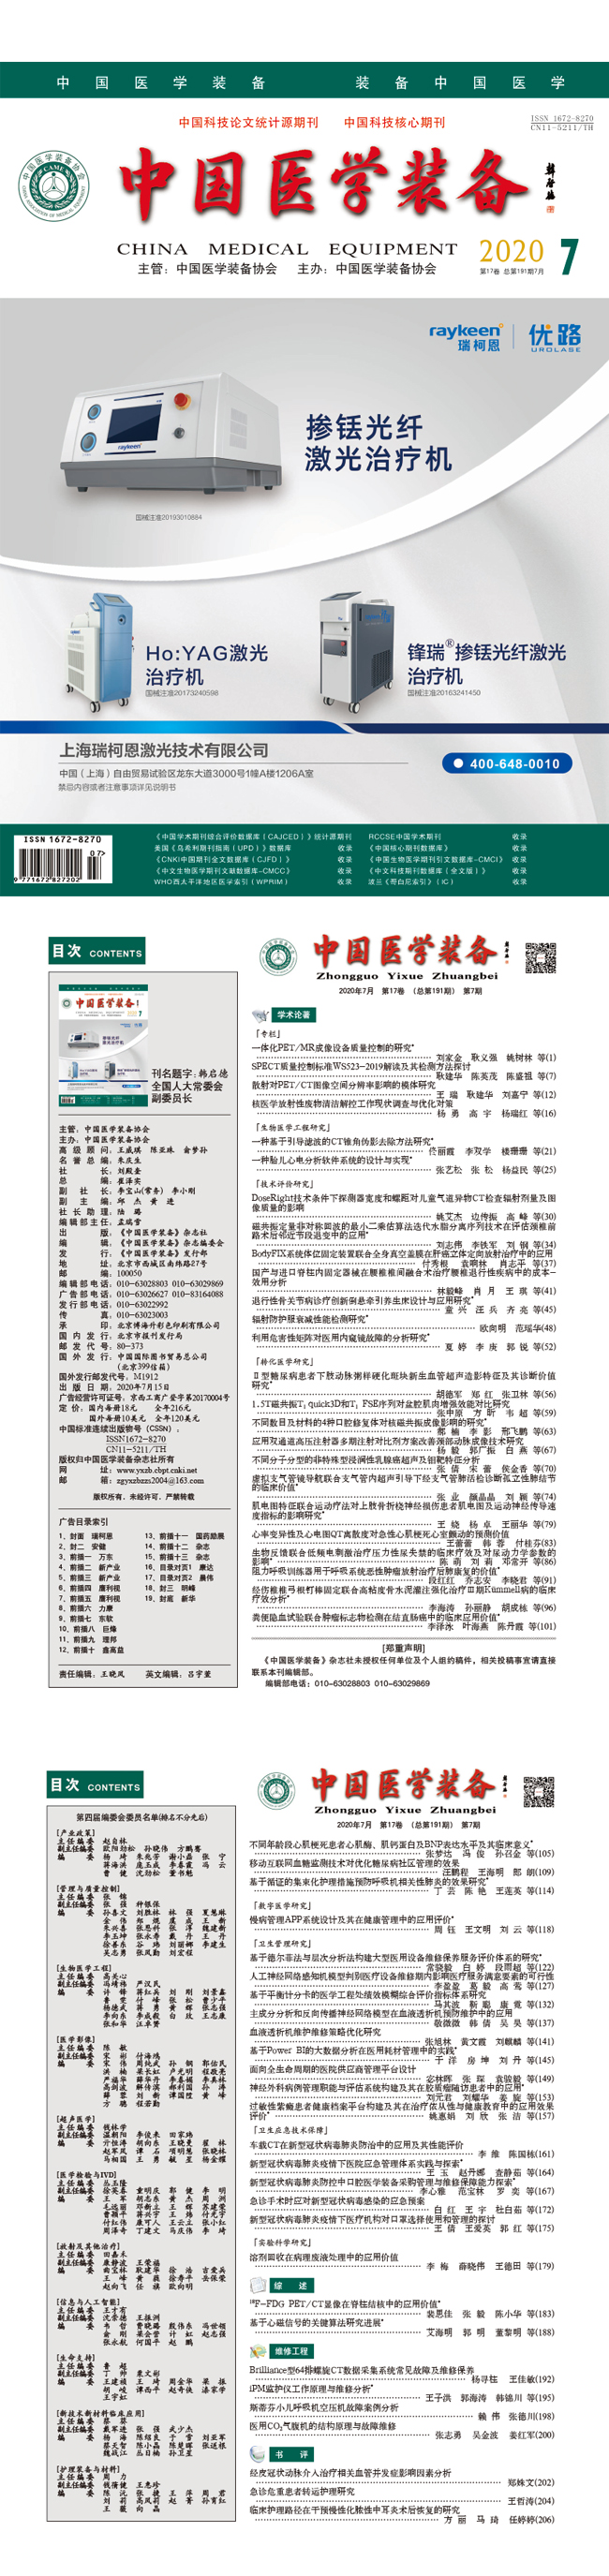 《中国医学装备》2020年7期出版(图1)